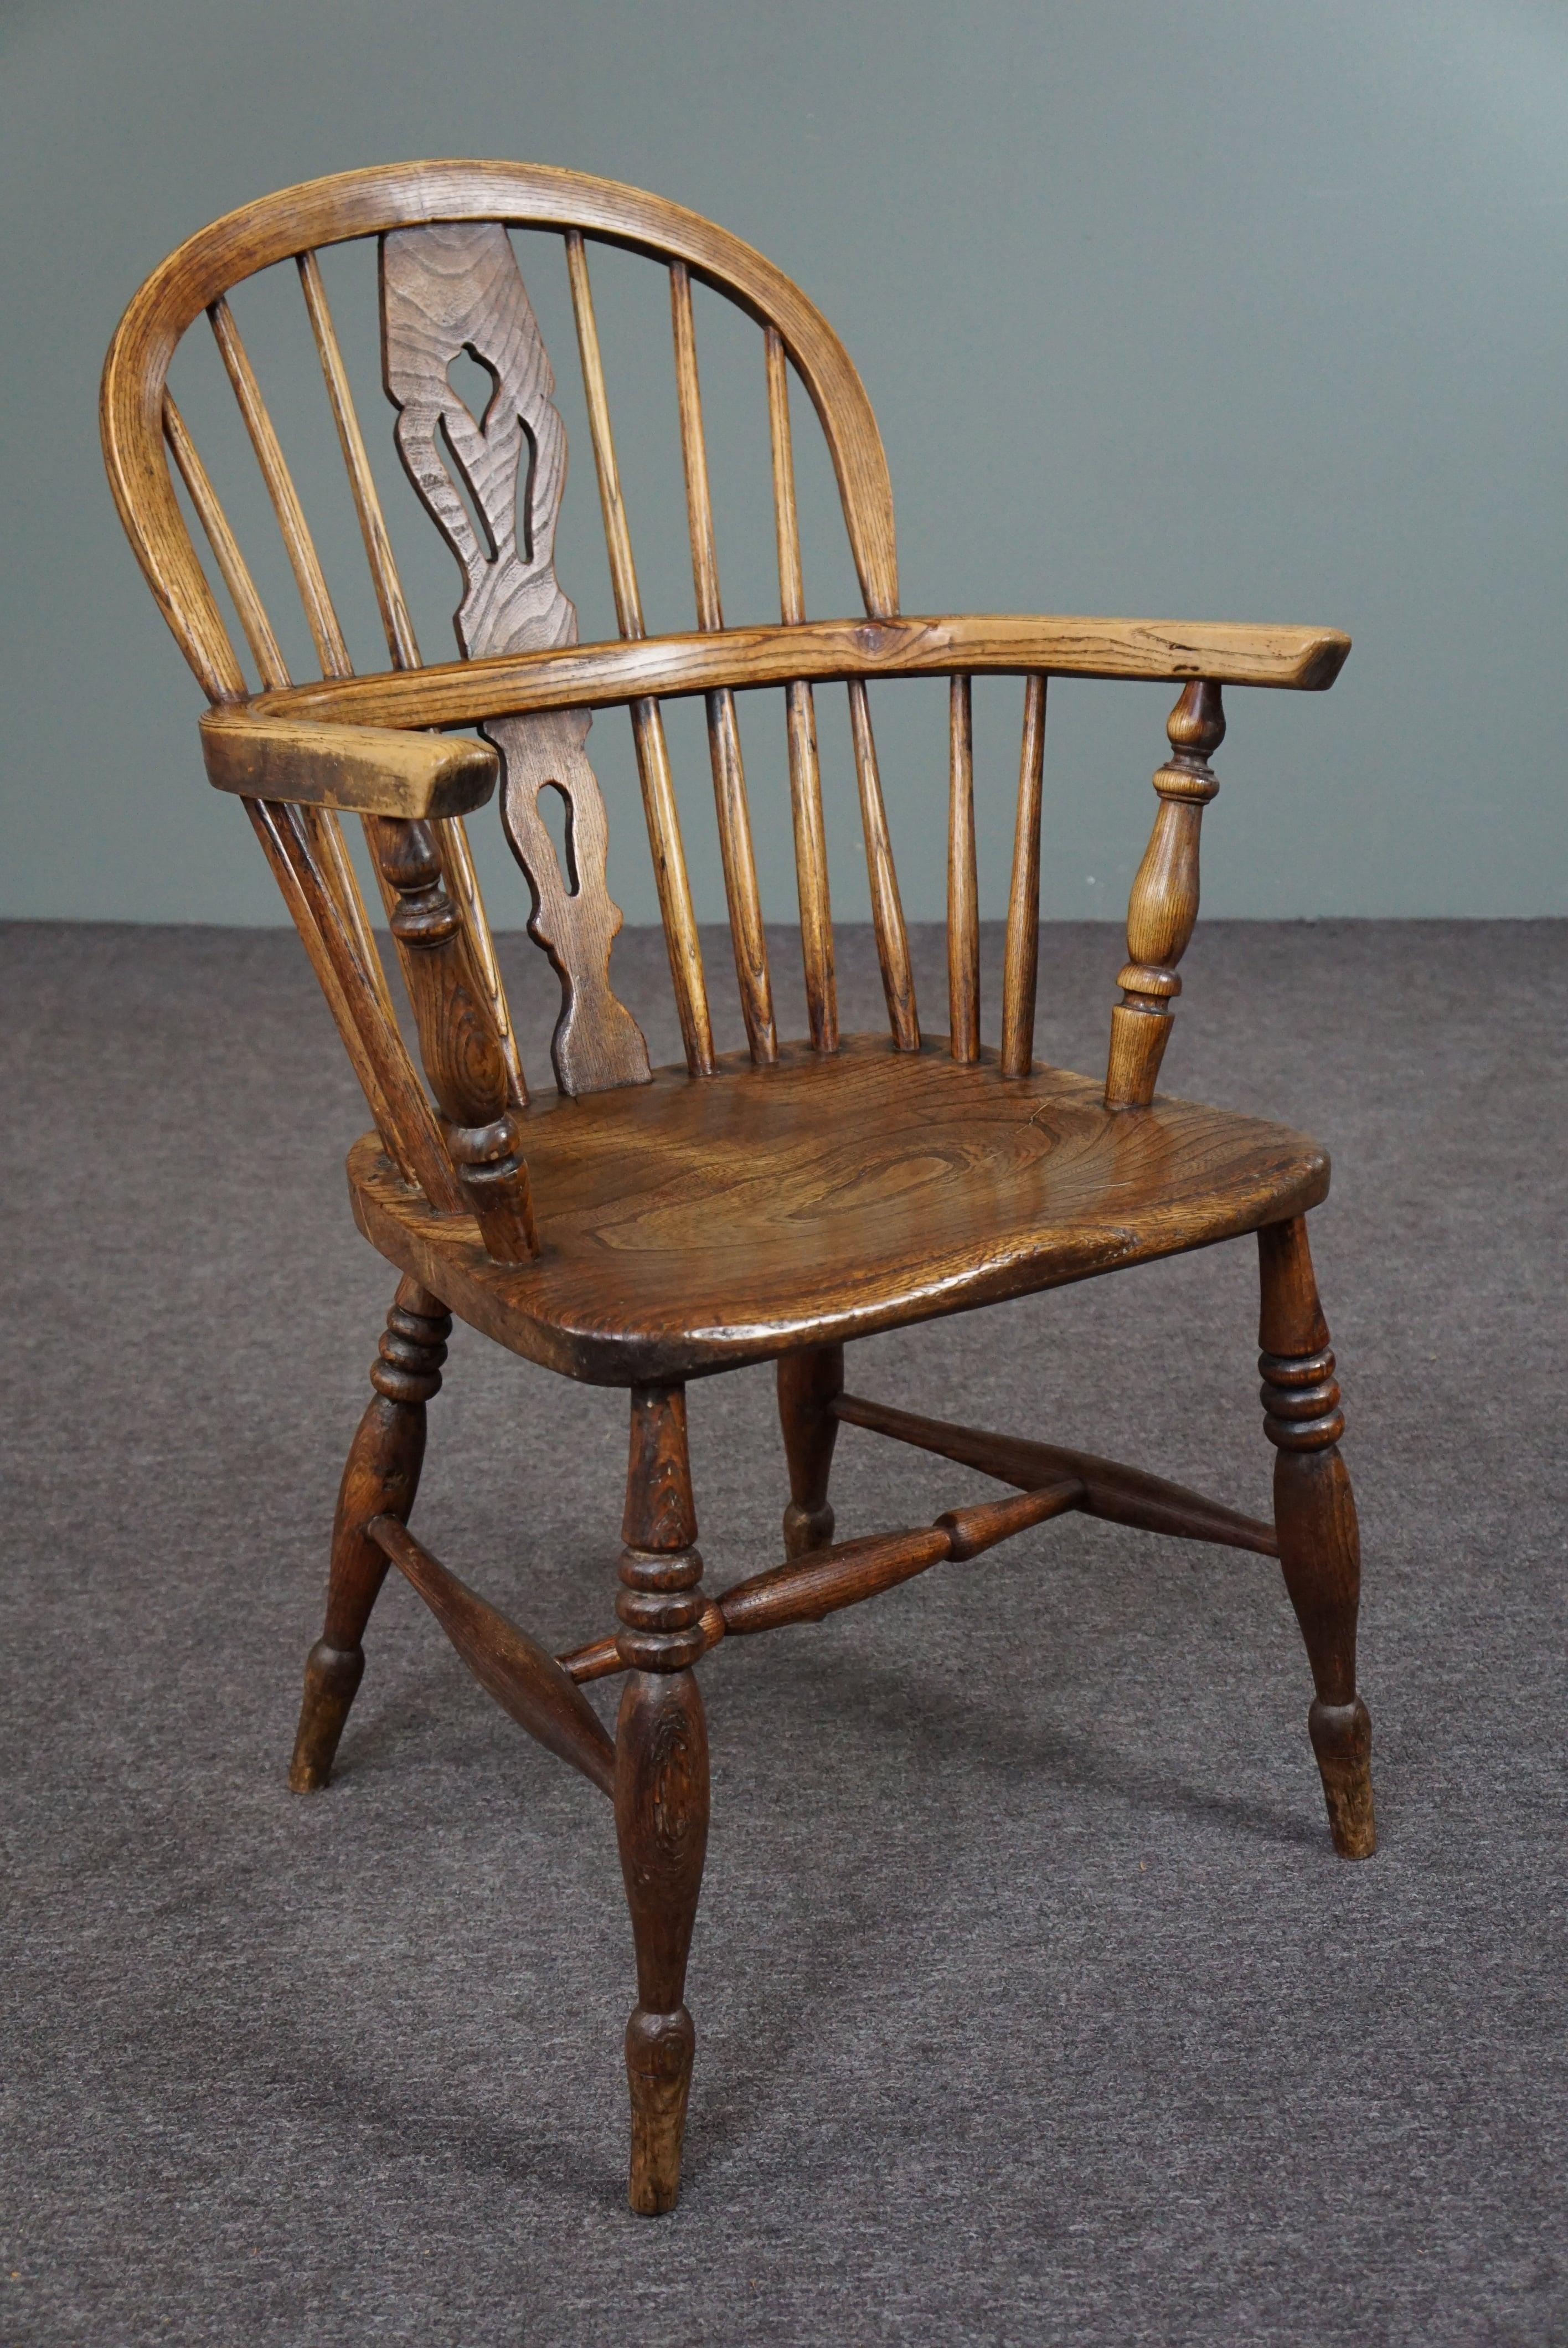 Nous vous proposons ce beau fauteuil ancien en bois massif avec un très bel aspect caractéristique.

Ce magnifique fauteuil Windsor anglais ancien avec accoudoirs est doté d'une assise en bois massif épaisse et bien formée. La chaise a de charmants